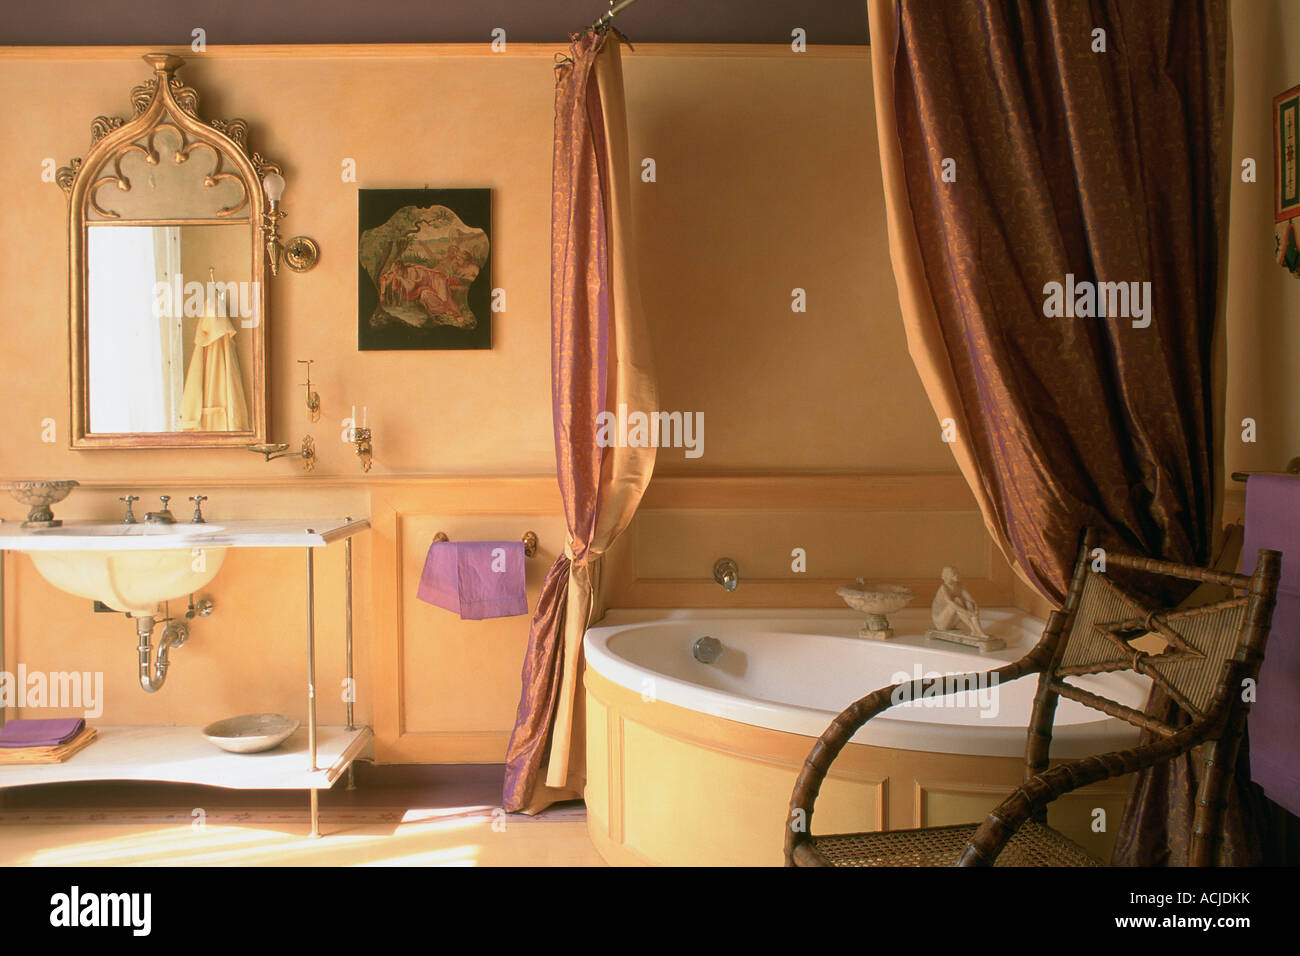 Bad Badewanne mit Vorhängen Spüle Tiefdruck und Spiegel an der Wand Stockfoto